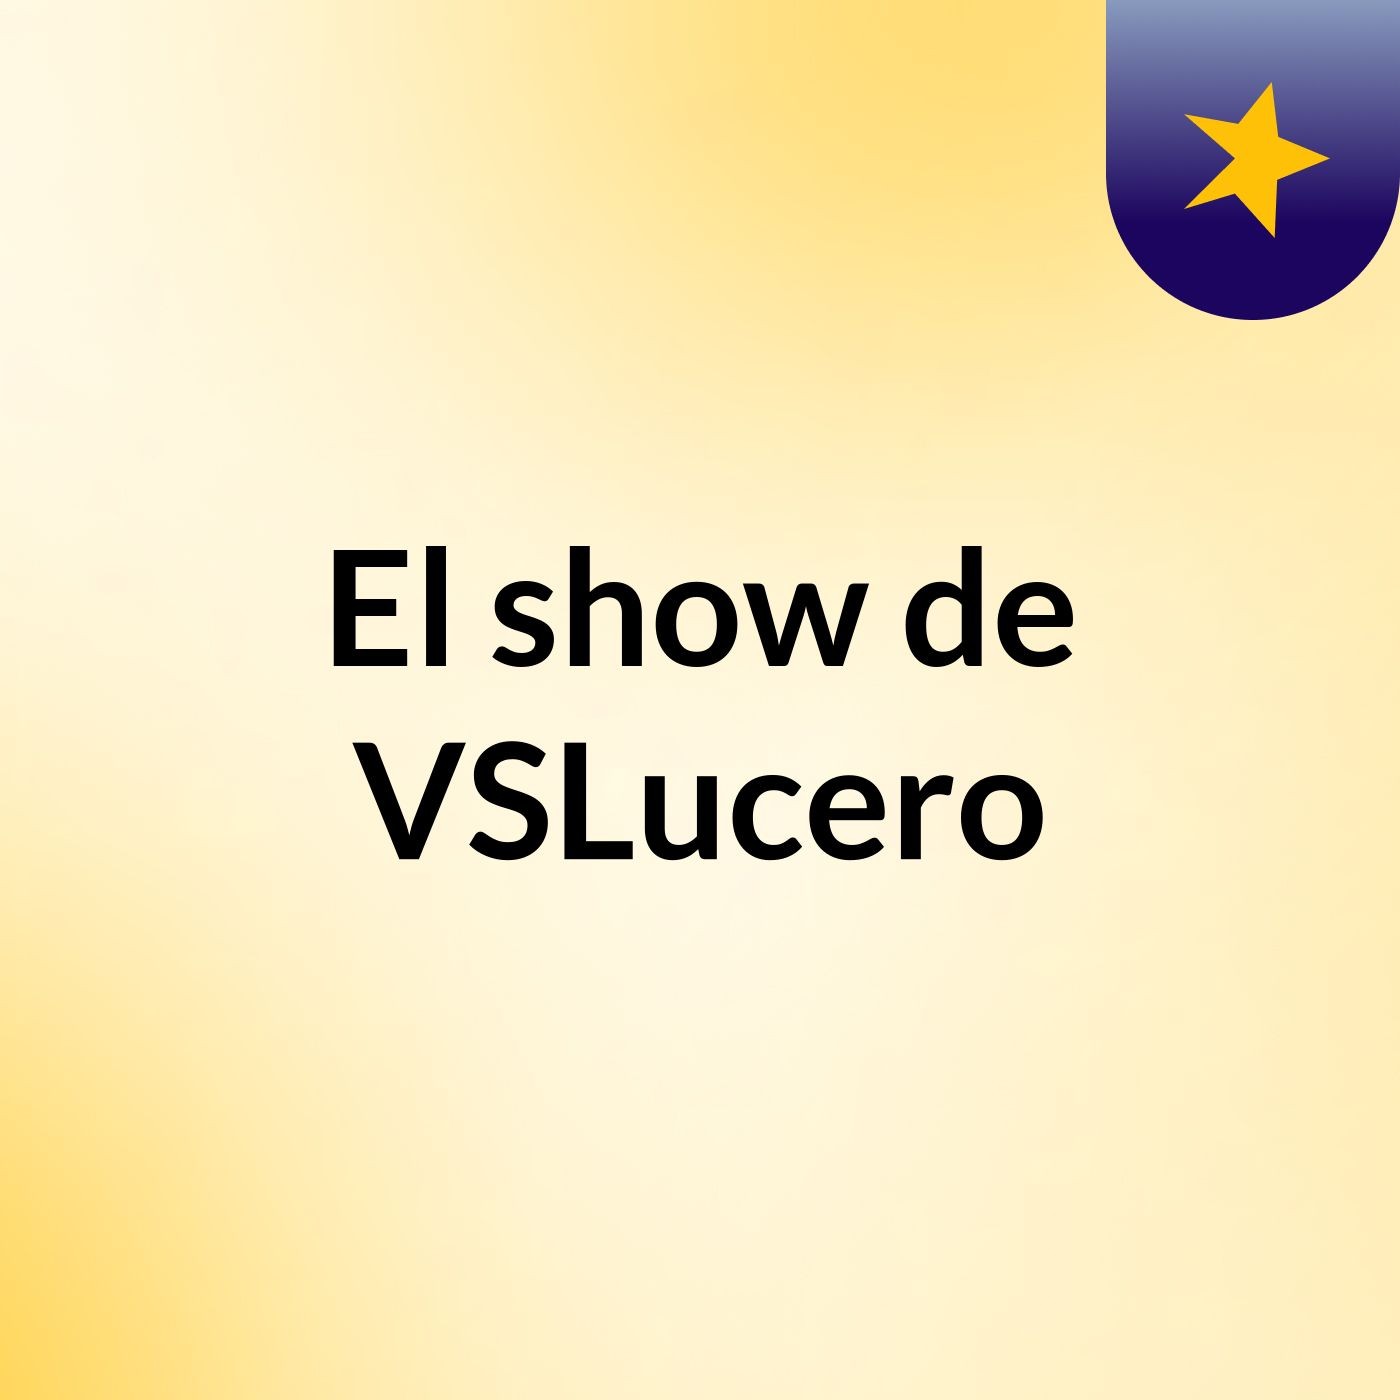 El show de VSLucero